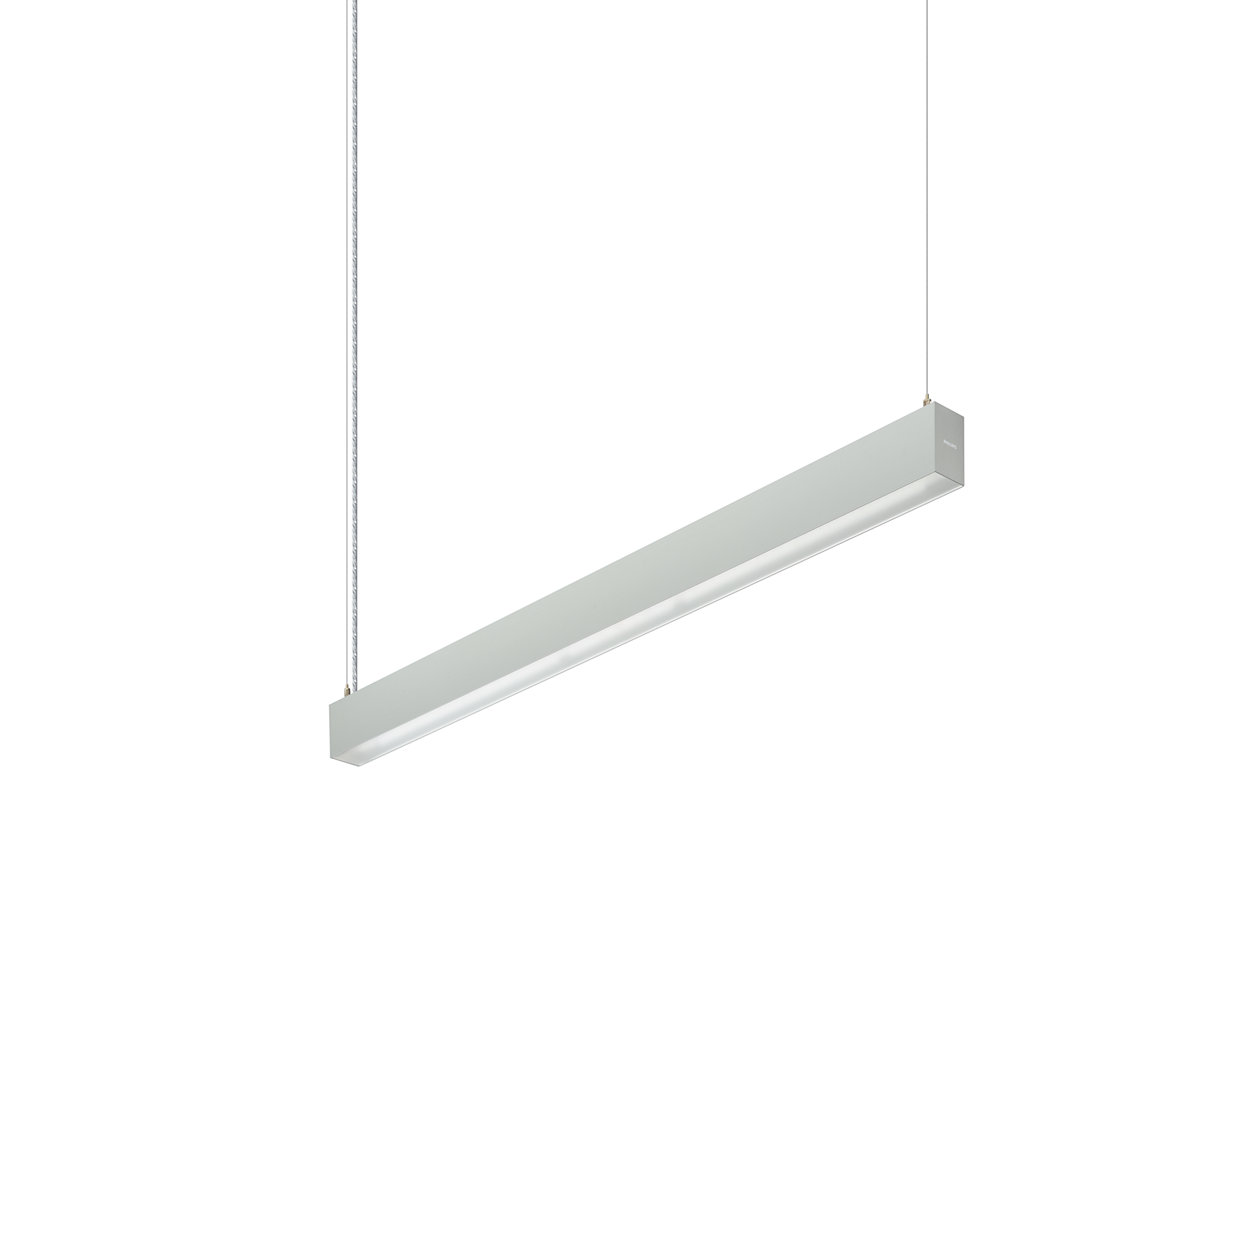 TrueLine, suspendido: una verdadera línea de luz, elegante, de bajo consumo y que cumple con las normas de iluminación de oficinas